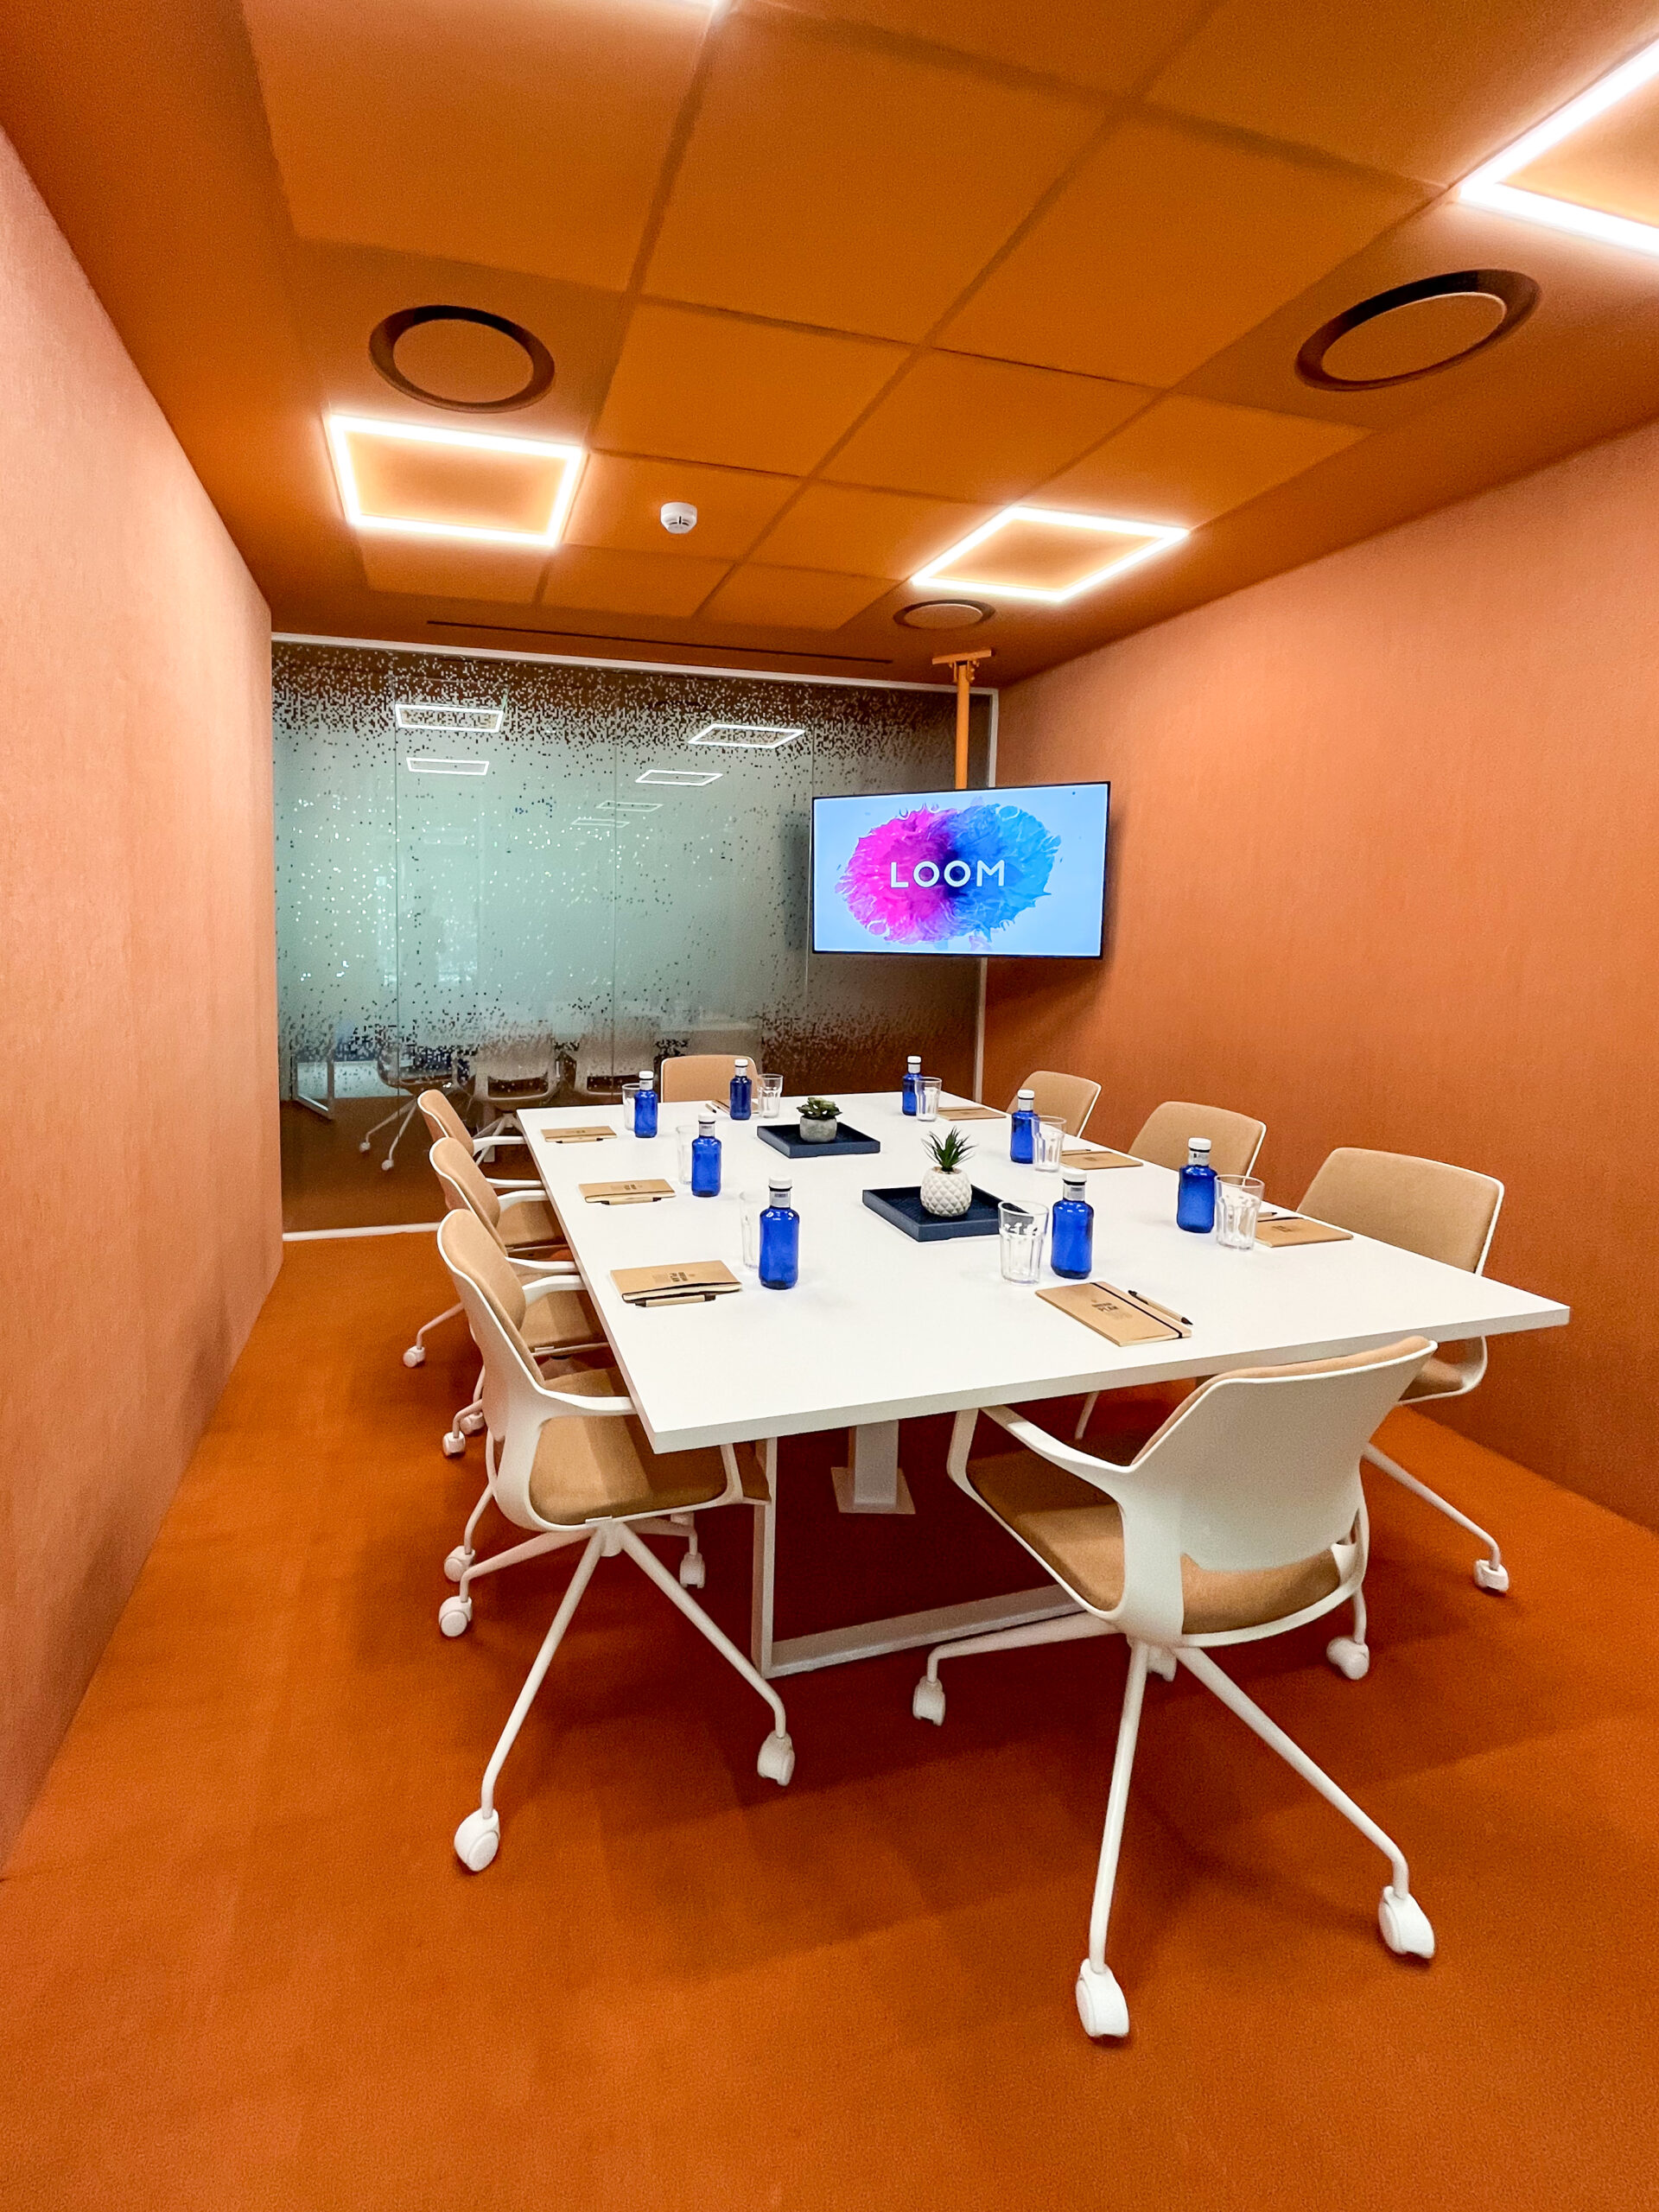 sala de reuniones mastermind mejores salas de reuniones en madrid - pozuelo de alarcón en le parque empresarial ática - espacio de coworking loom ática